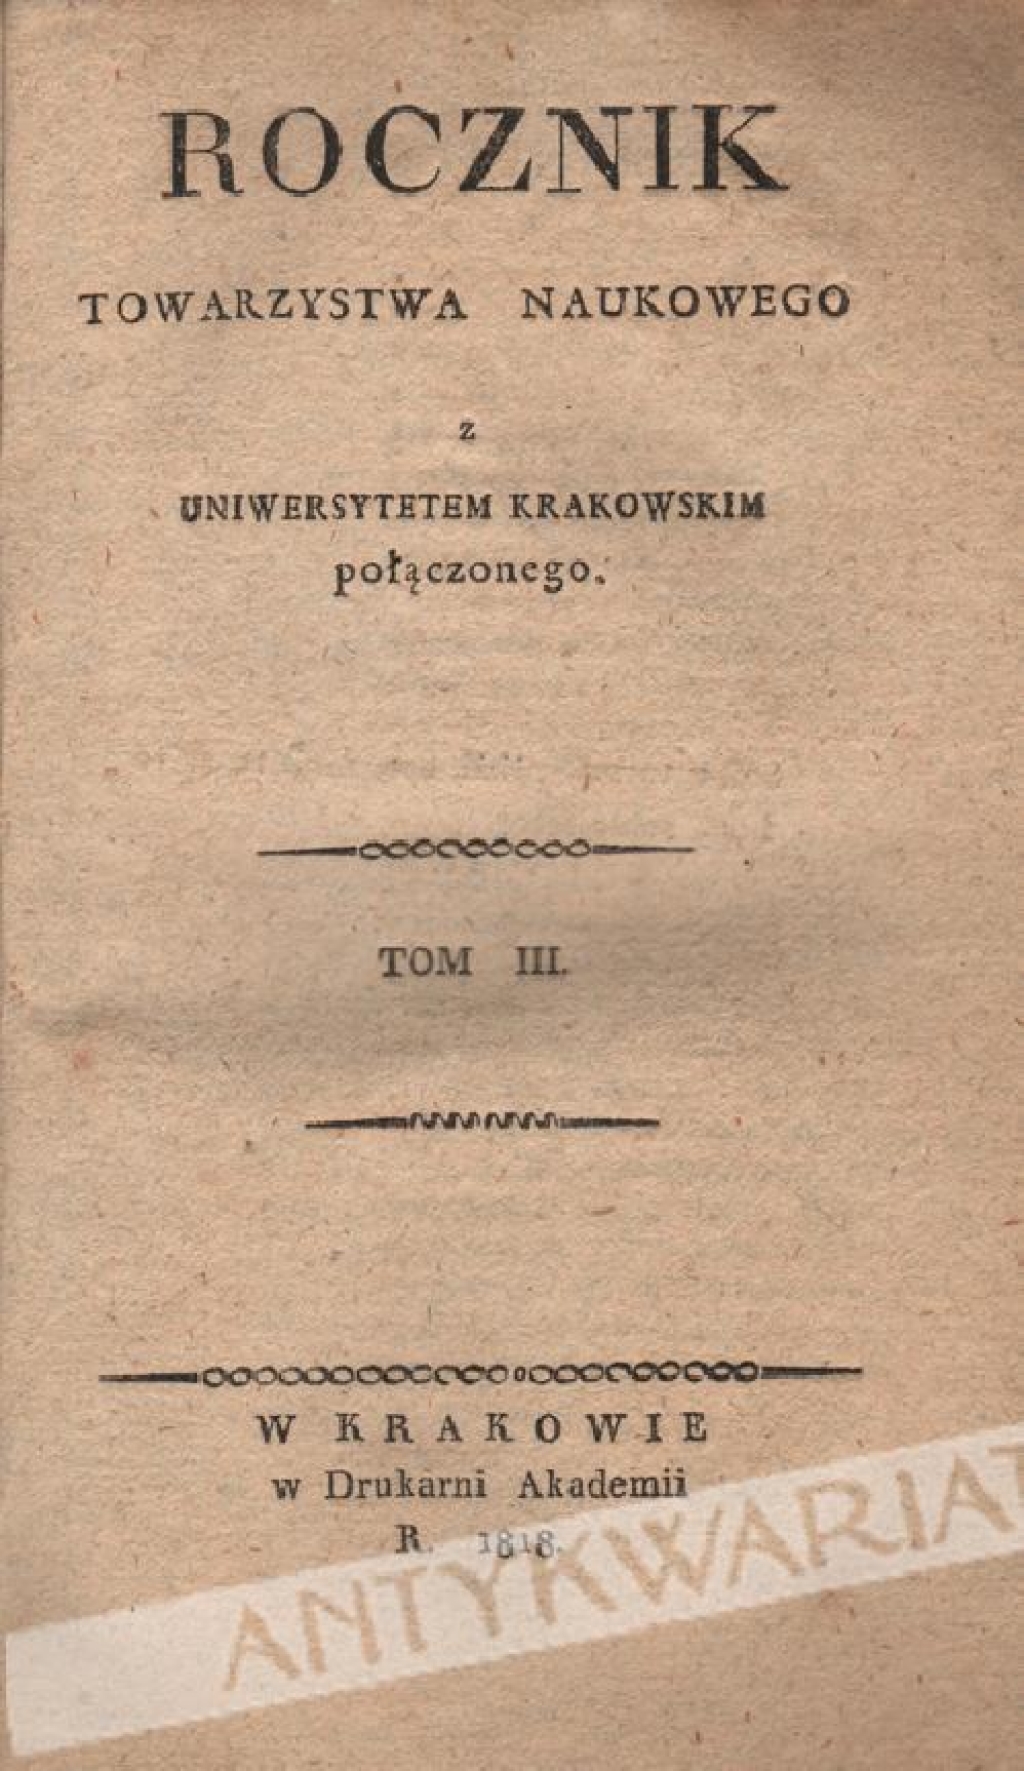 Rocznik Towarzystwa Naukowego z Uniwersytetem Krakowskim Połączonego, t. III